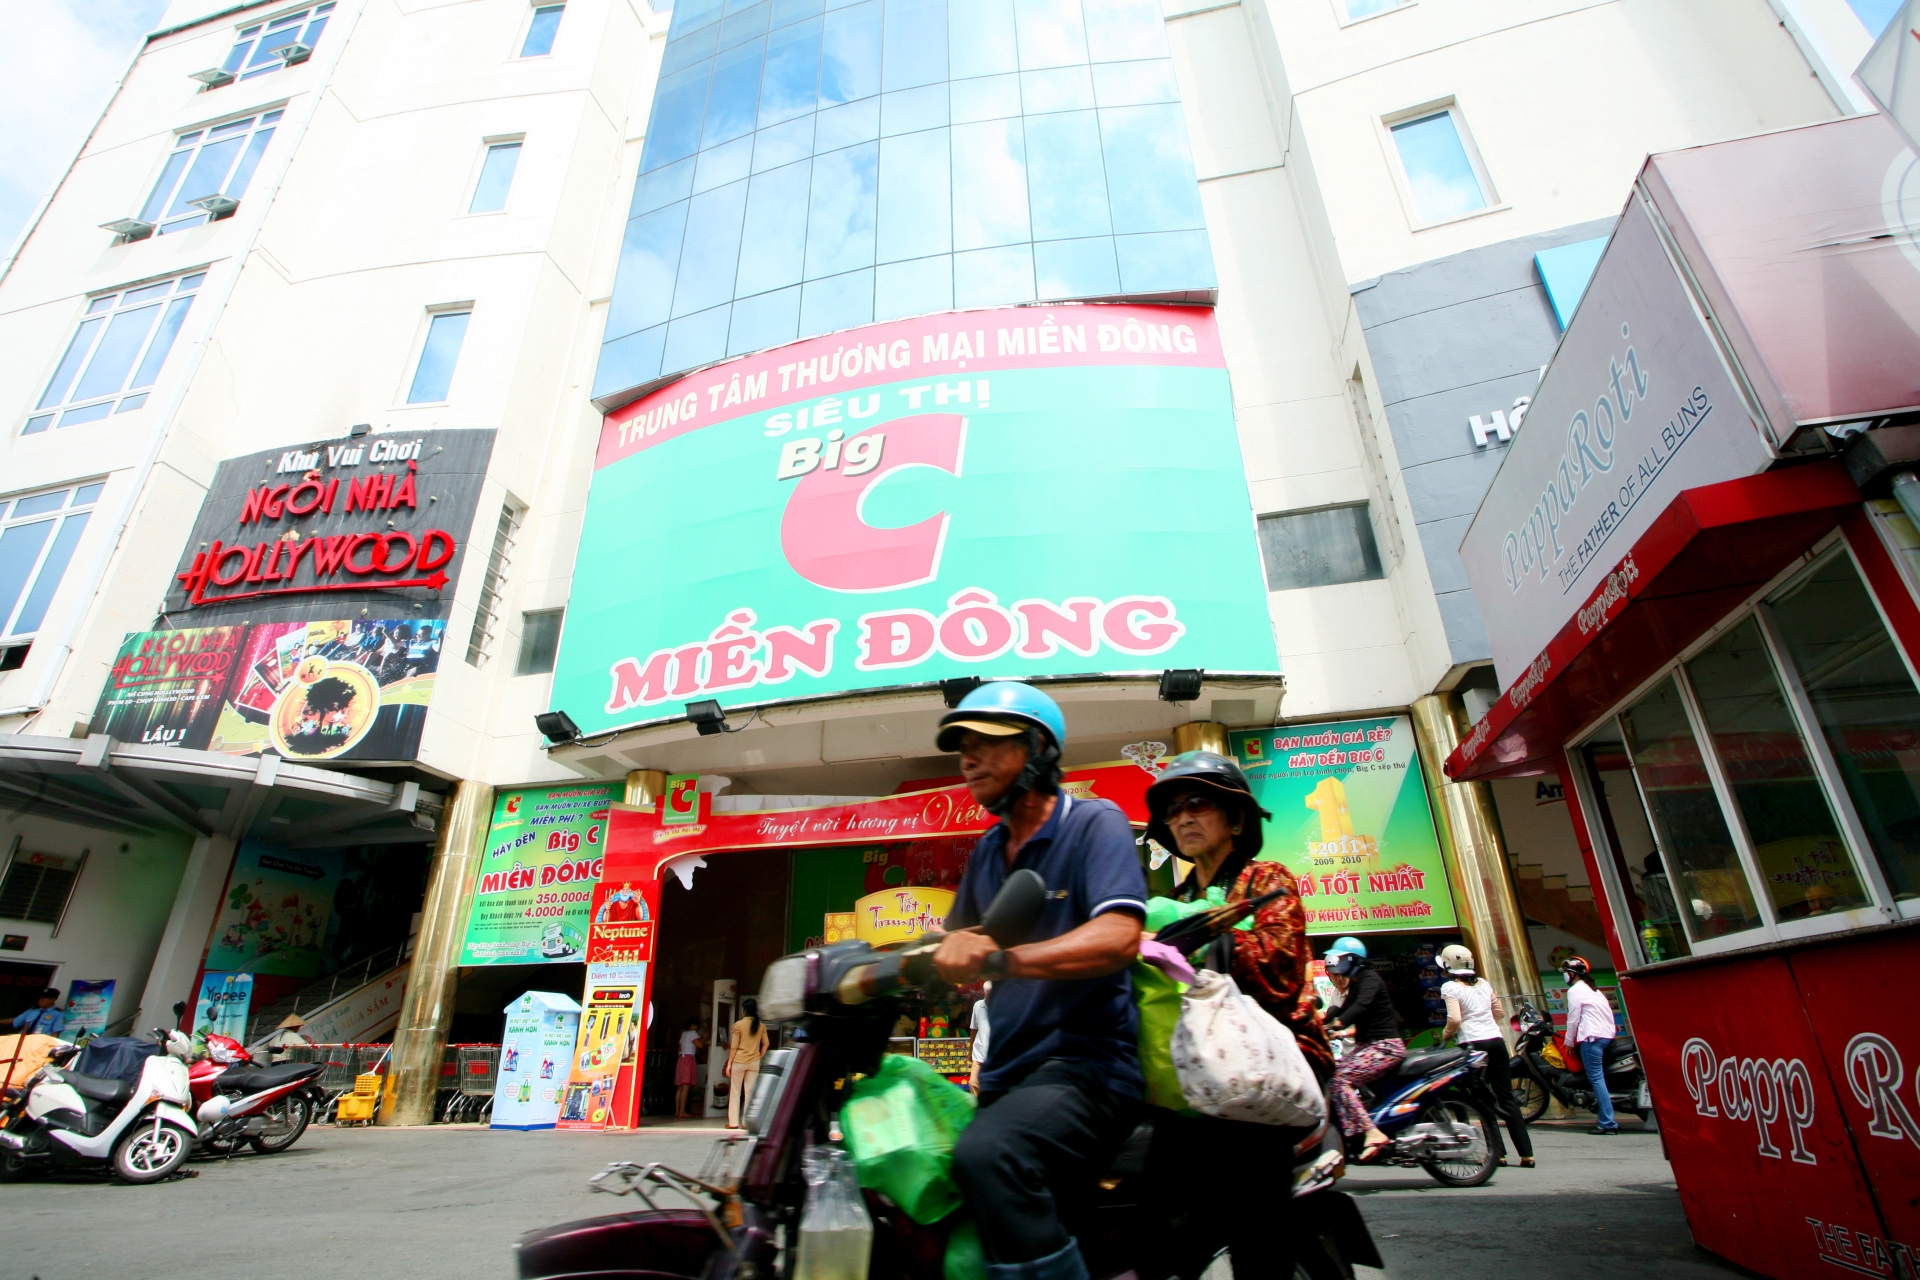 big c renamed to go and tops market in vietnam